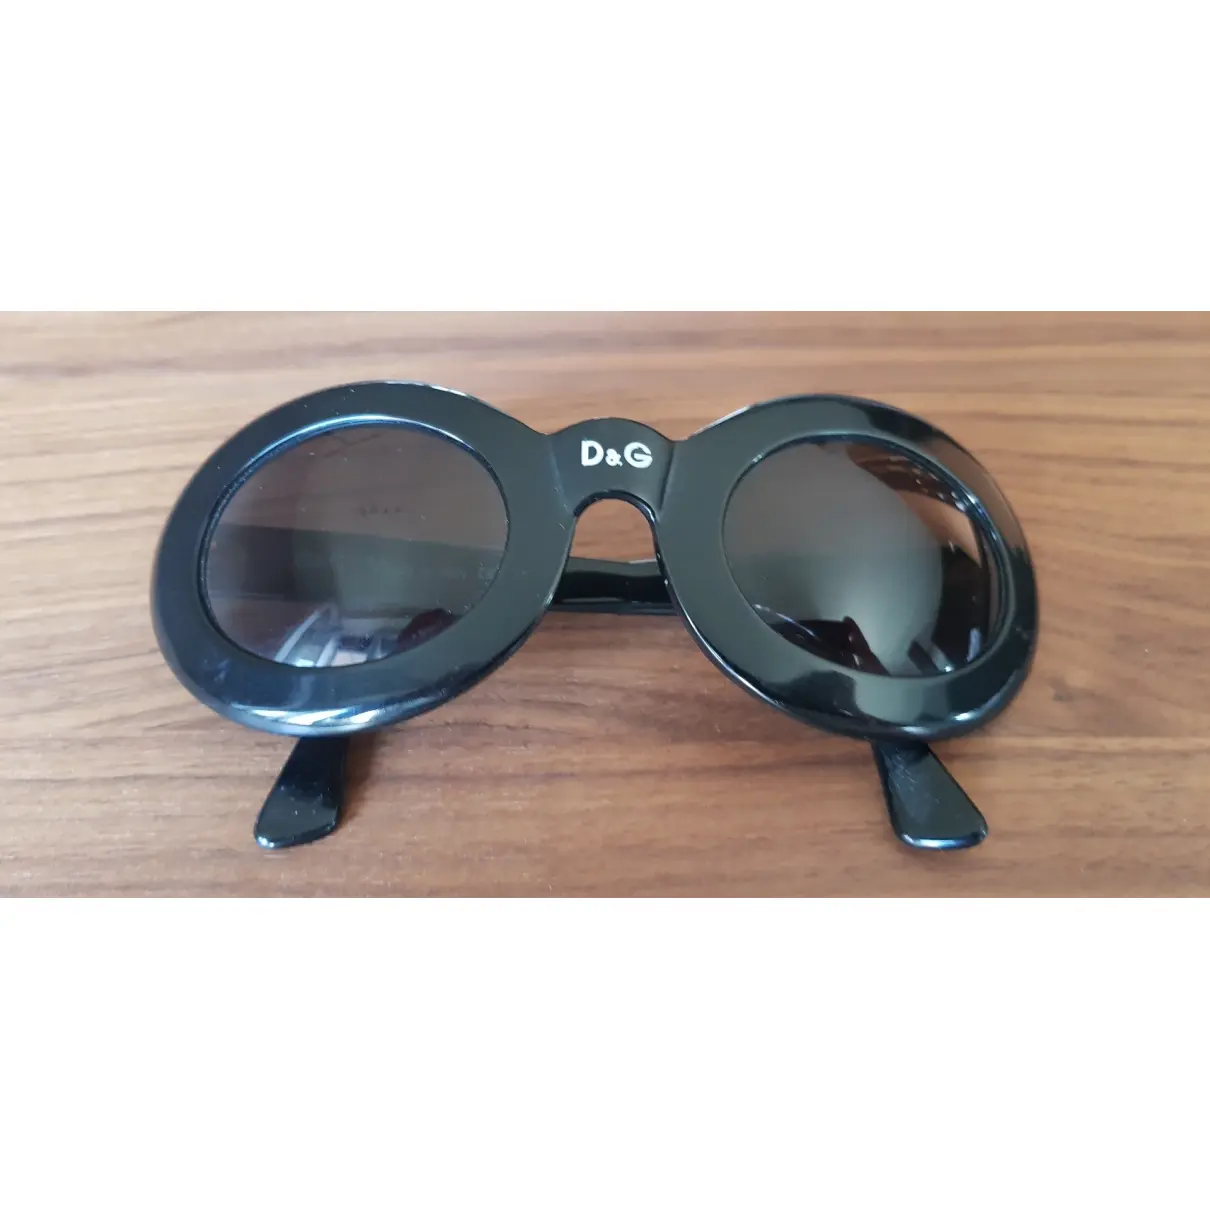 Buy D&G Oversized sunglasses online